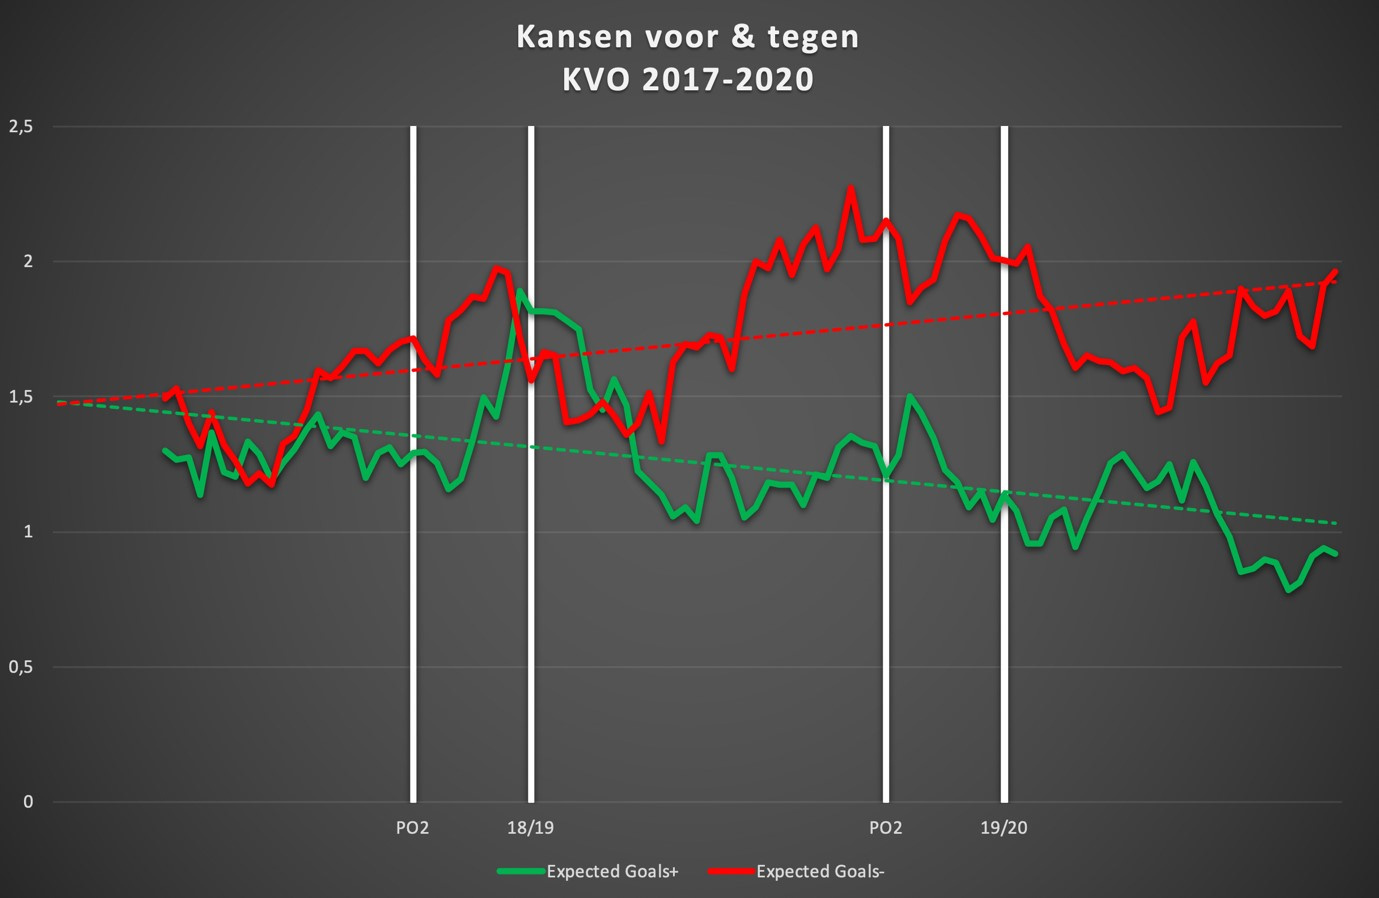 De evolutie van de kansen voor (groen) en tegen (rood) van KVO de afgelopen drie seizoenen., Redactie